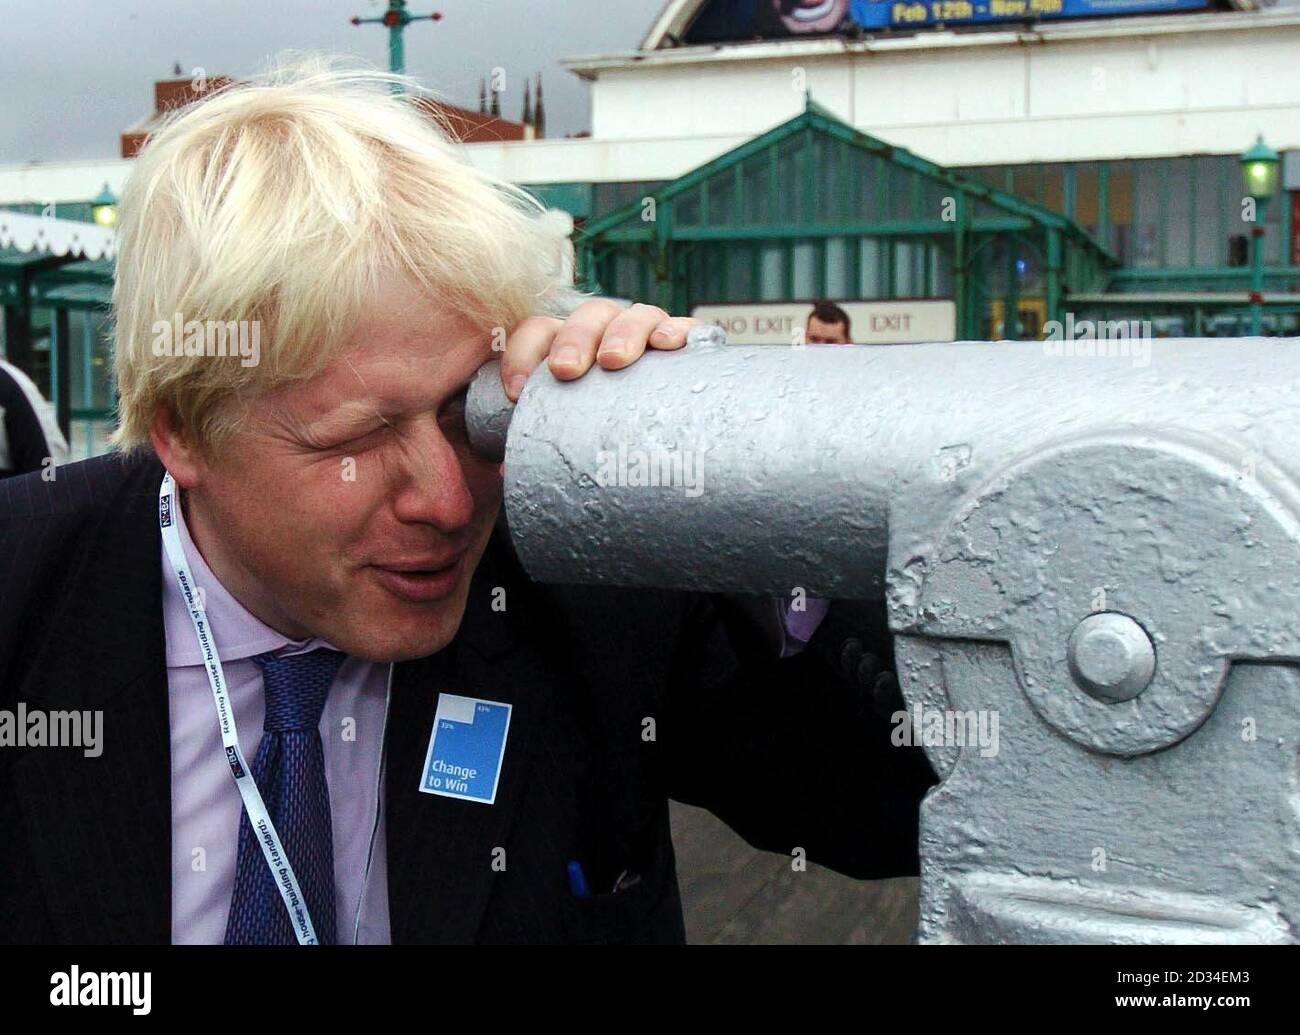 Boris Johnson der konservative Abgeordnete für Henley schaut durch ein Teleskop auf dem North Pier in Blackpool, Montag, 3. Oktober 2005 am ersten Tag der Konservativen Konferenz. Der farbenfrohe Tory-Abgeordnete Boris Johnson sagte heute, er finde die Idee, dass Gordon Brown jeden Führer der Konservativen Partei bei einer Parlamentswahl besiegen könnte, "absolut unglaublich". Das Mitglied des Herausgebers von Henley and Spectator, das David Camerons Führungsangebot unterstützt, sagte, dass er nicht für die anfechtigen Führer sei, die versuchen, Tony Blair nachzuahmen, sondern einen neuen Ansatz für den Konservatismus forderte. Rede an einem Konferenzrand Stockfoto